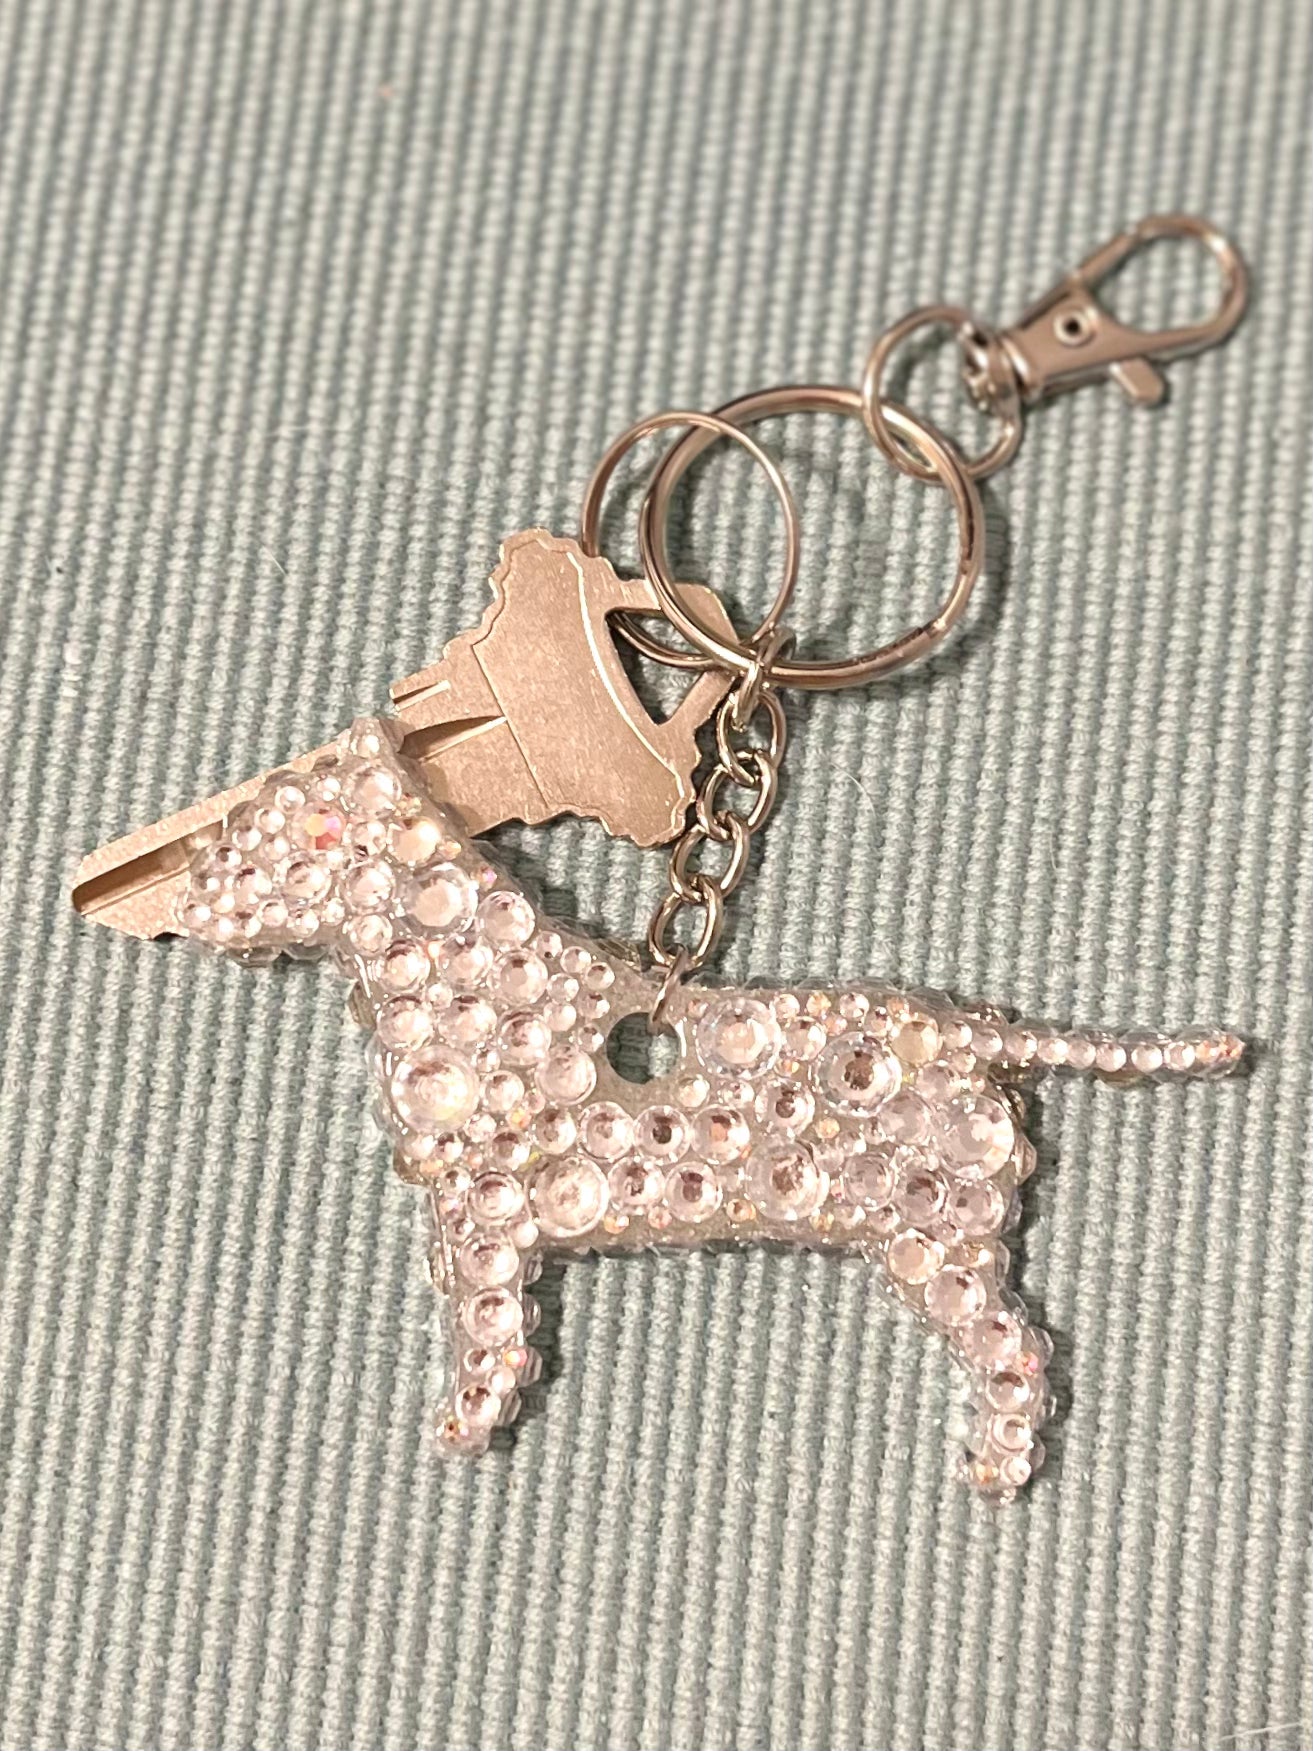 Blinged Bull Terrier Keychain